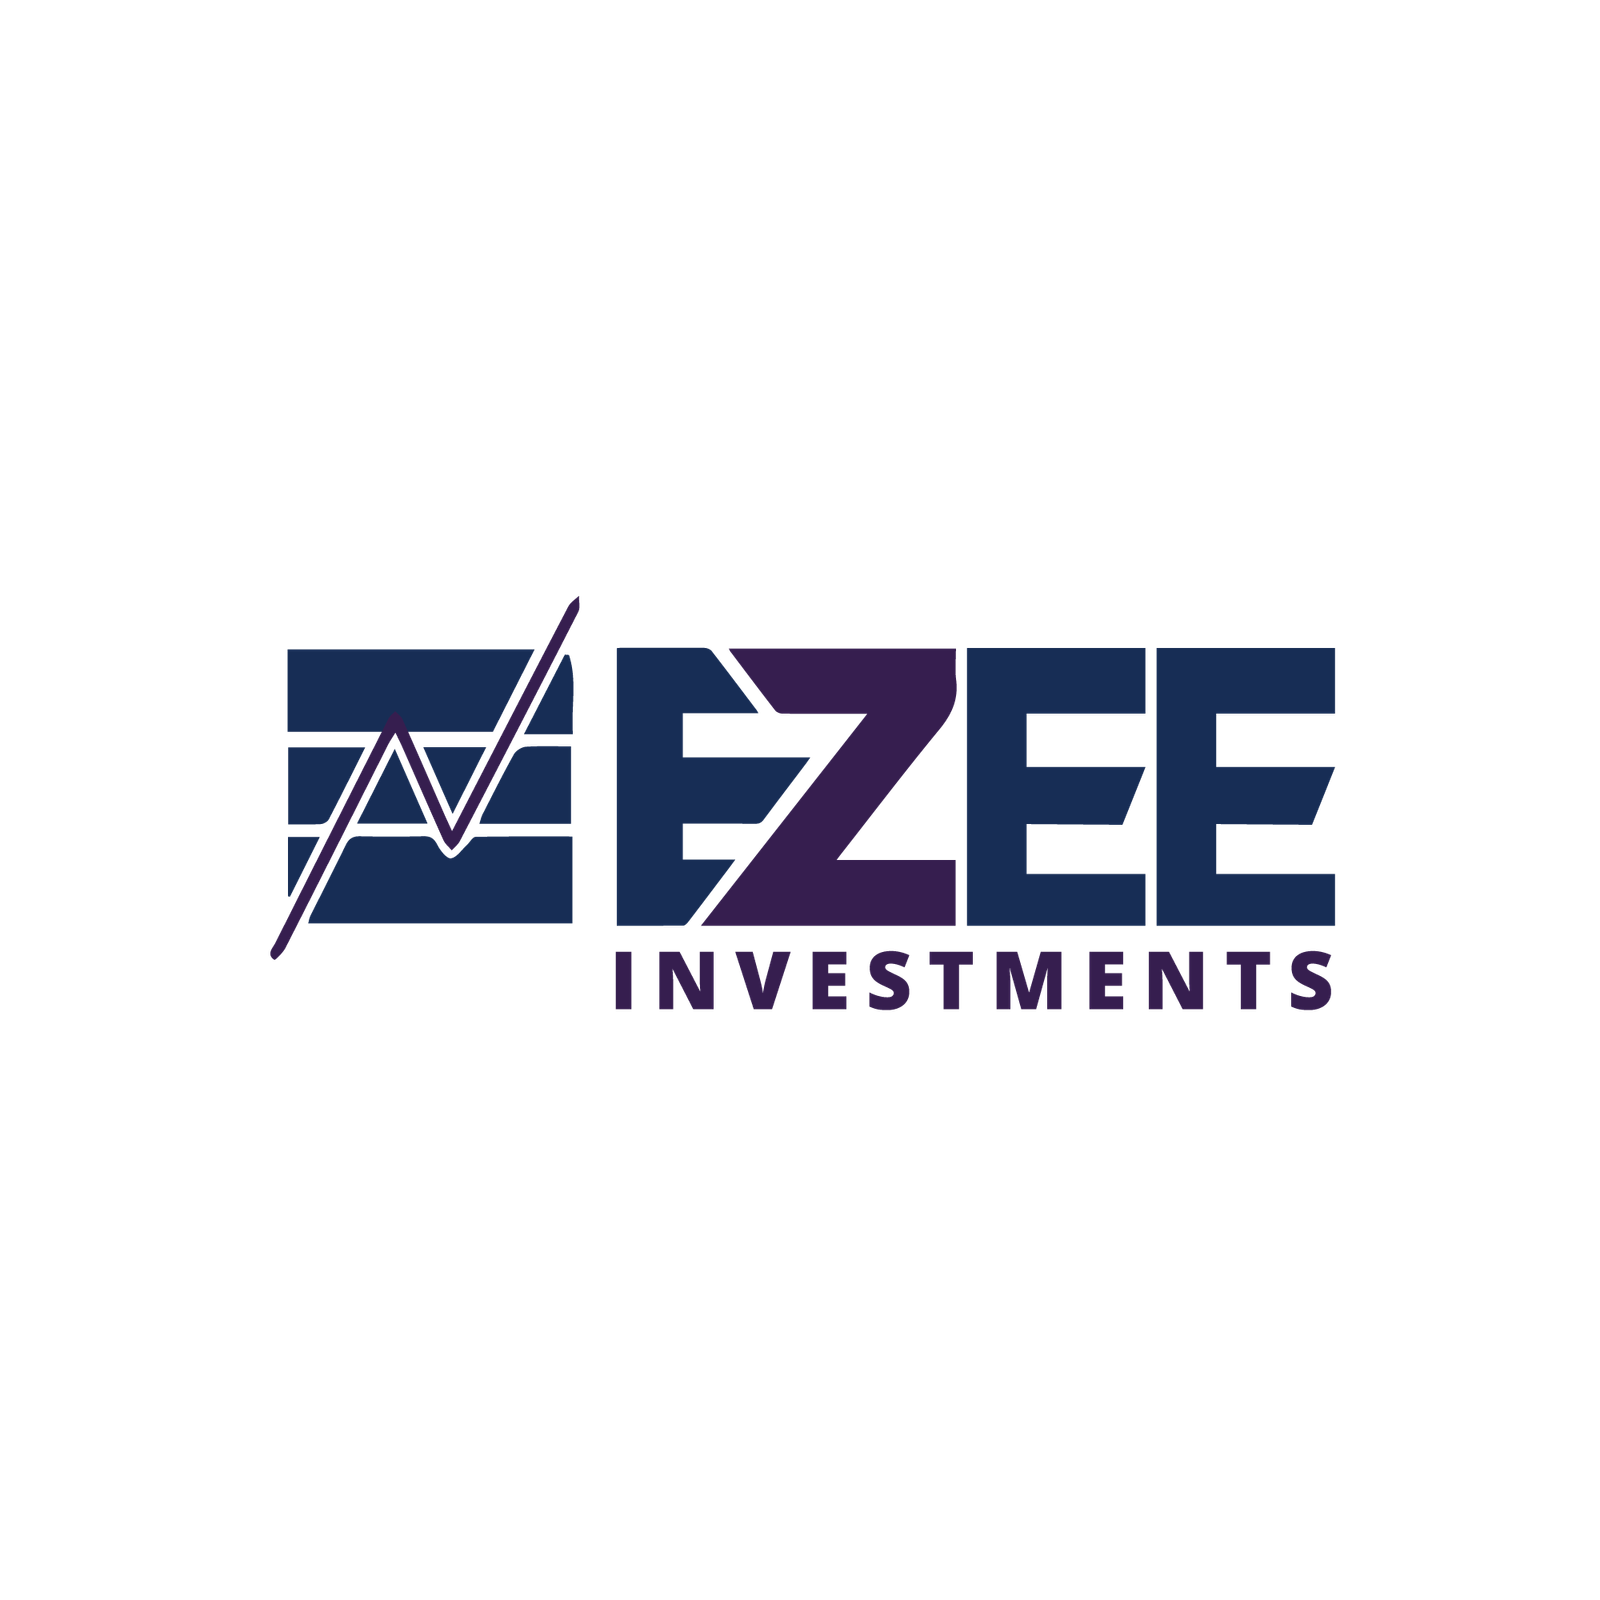 Ezee Investment